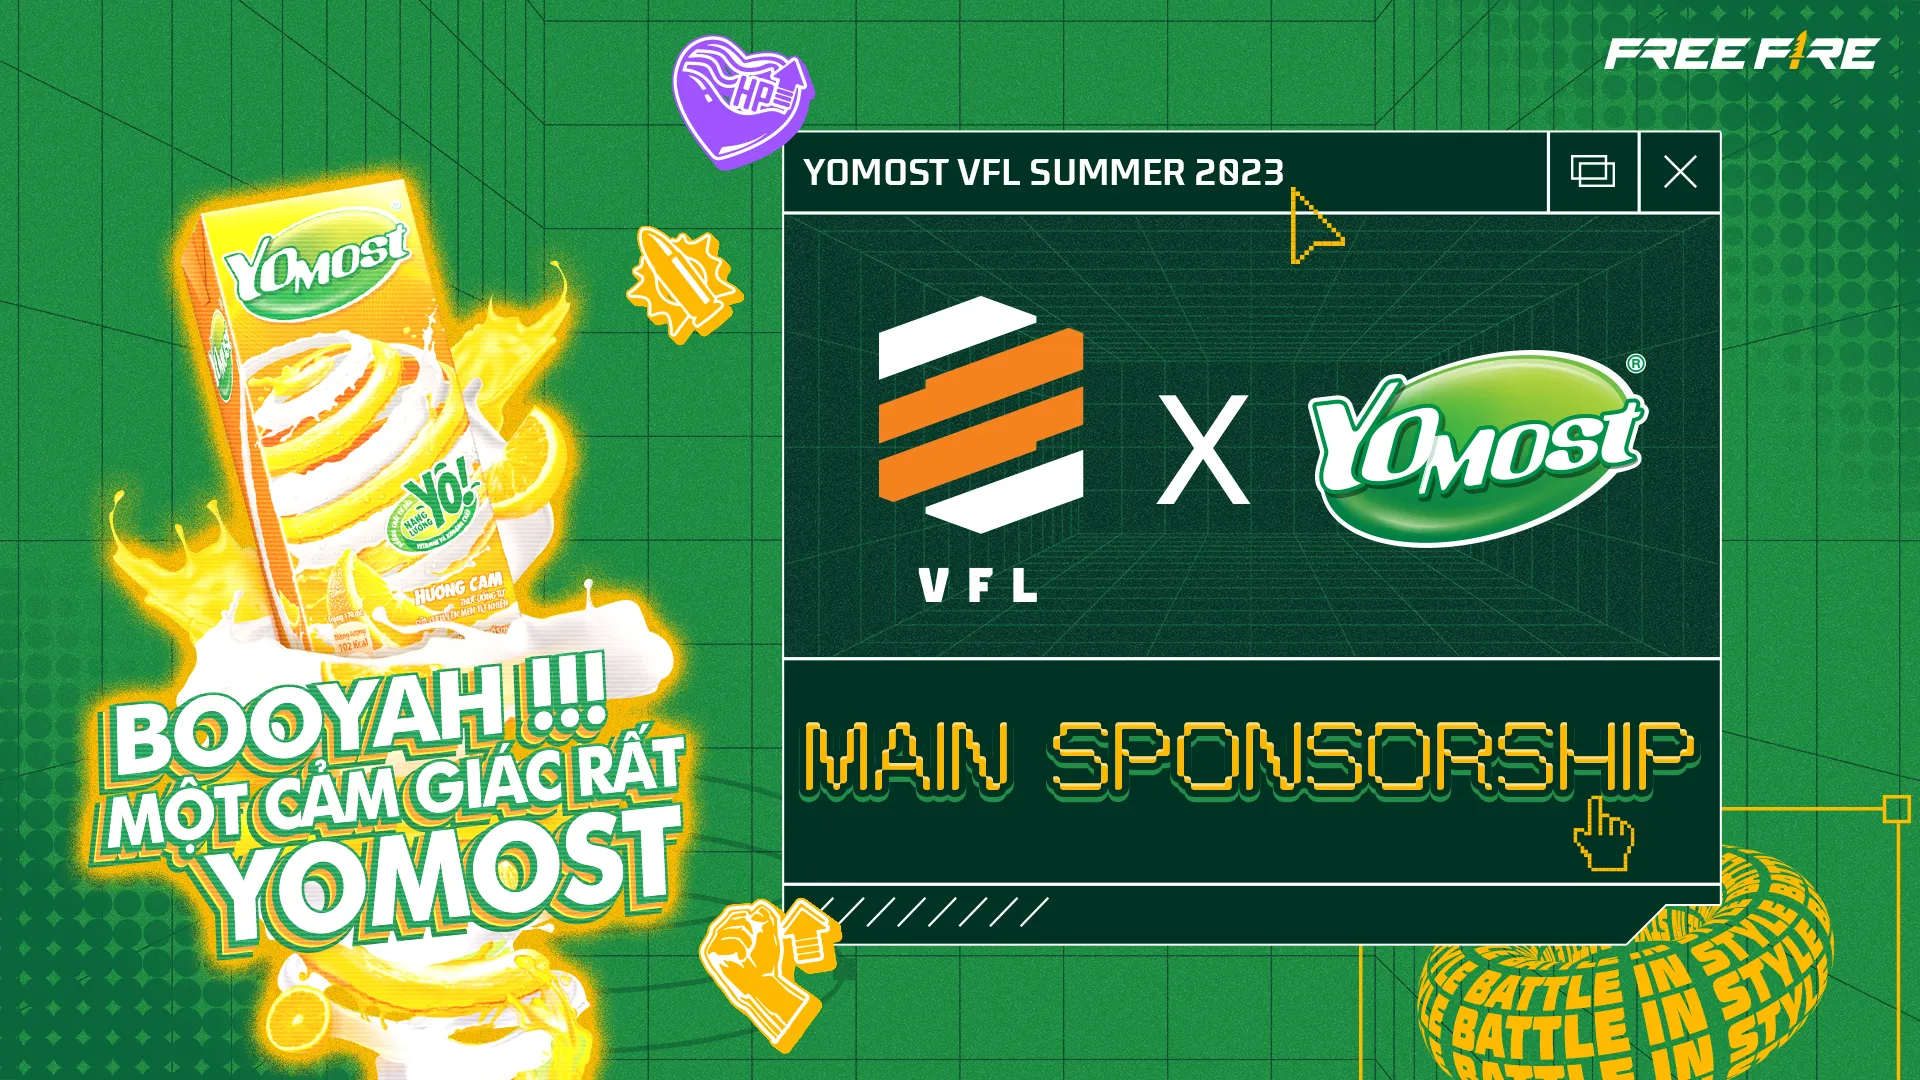 Giải đấu cấp độ cao nhất Free Fire Việt Nam – Yomost VFL Summer 2023 chính thức khởi tranh đánh dấu cột mốc 10 mùa giải chuyên nghiệp